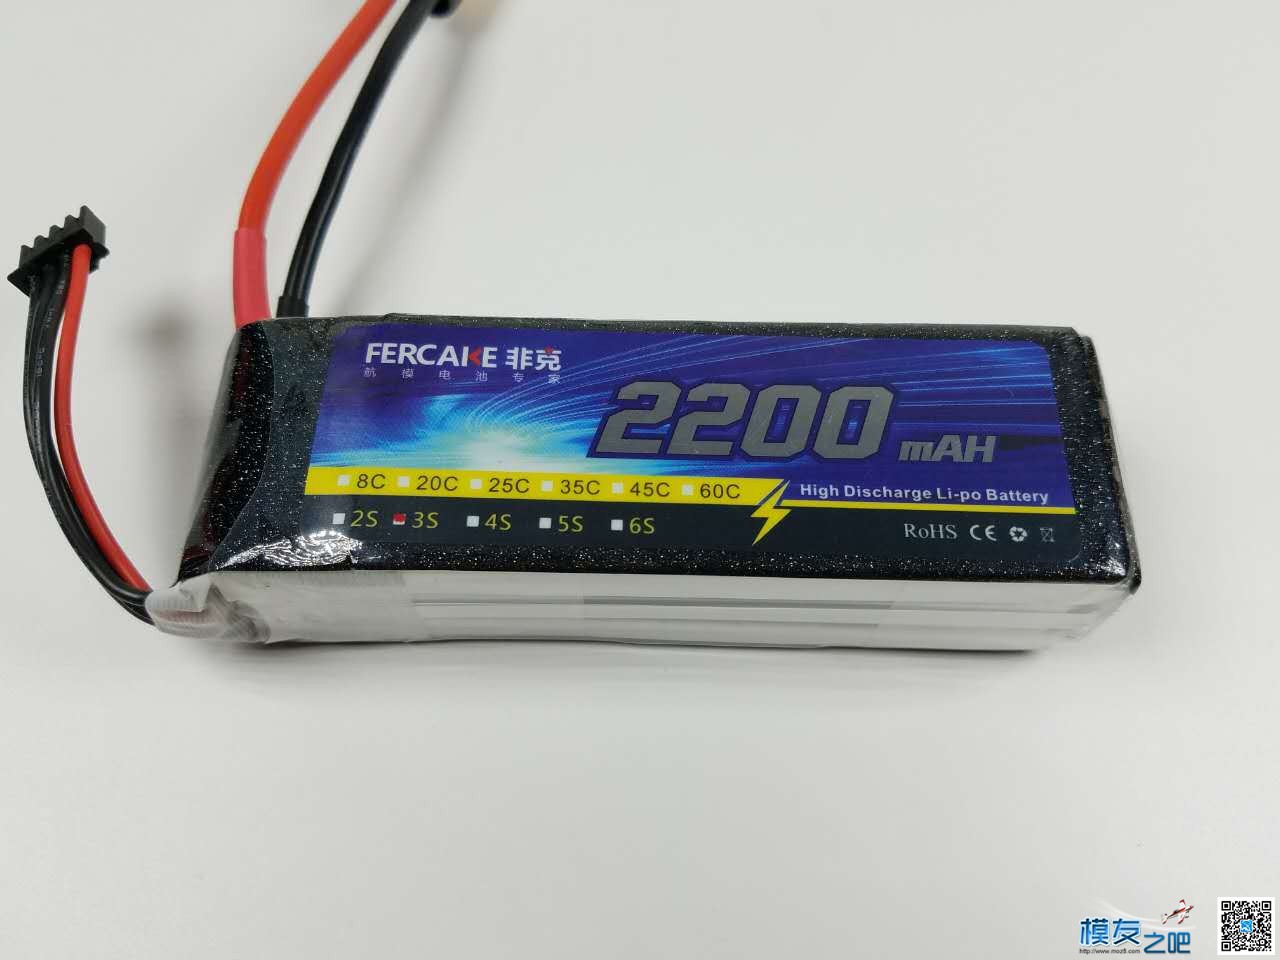 非克电池测试体验活动 电池,非克汽车02,taobao 作者:飞天狼 4119 